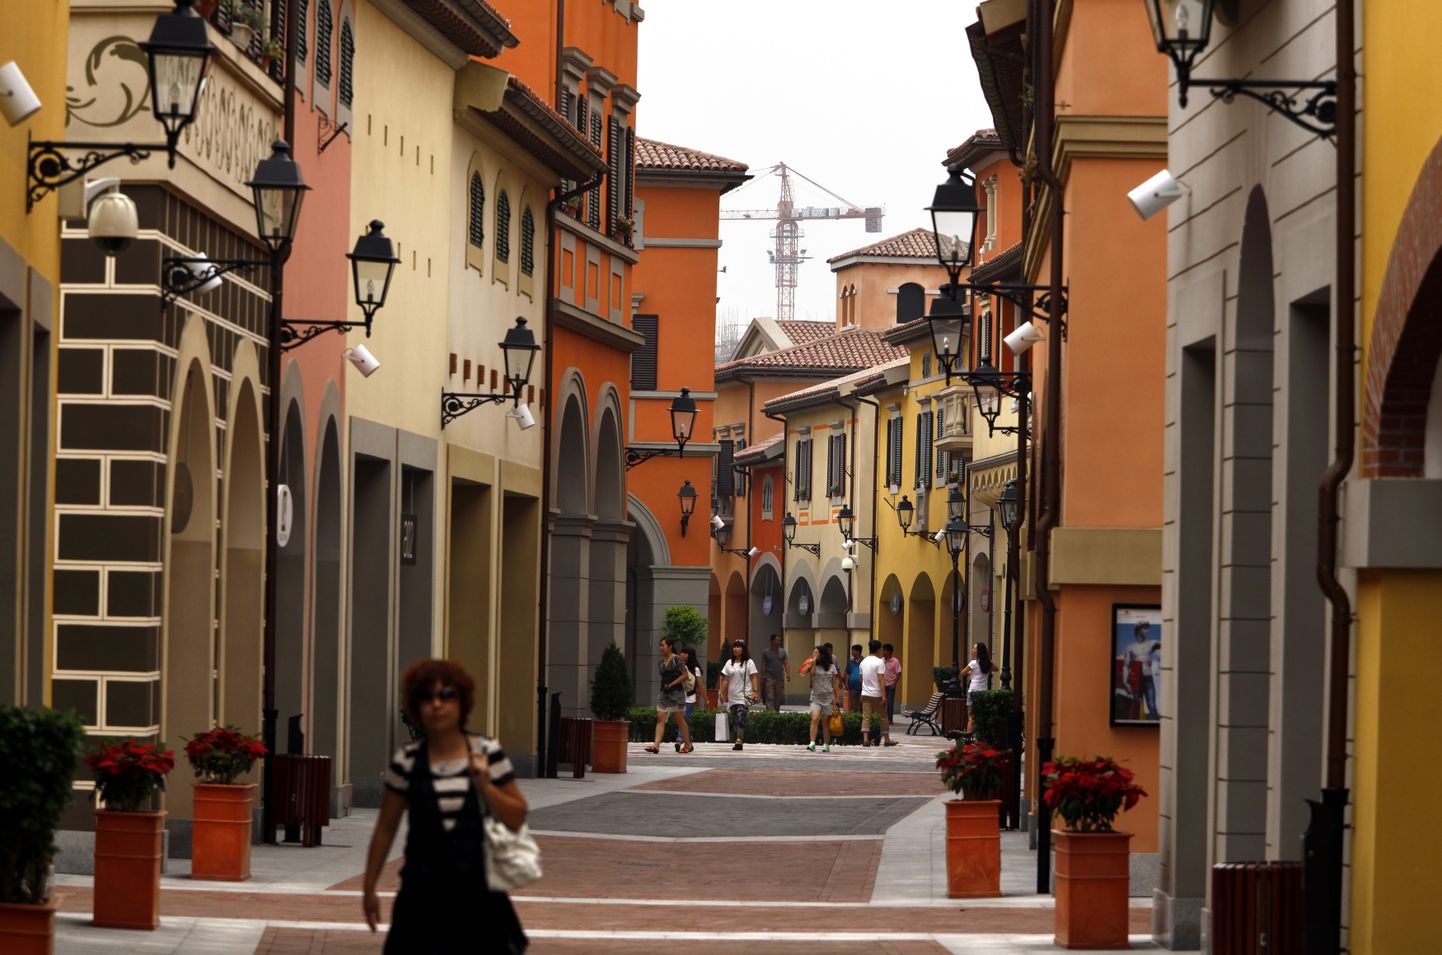 Florentia Village